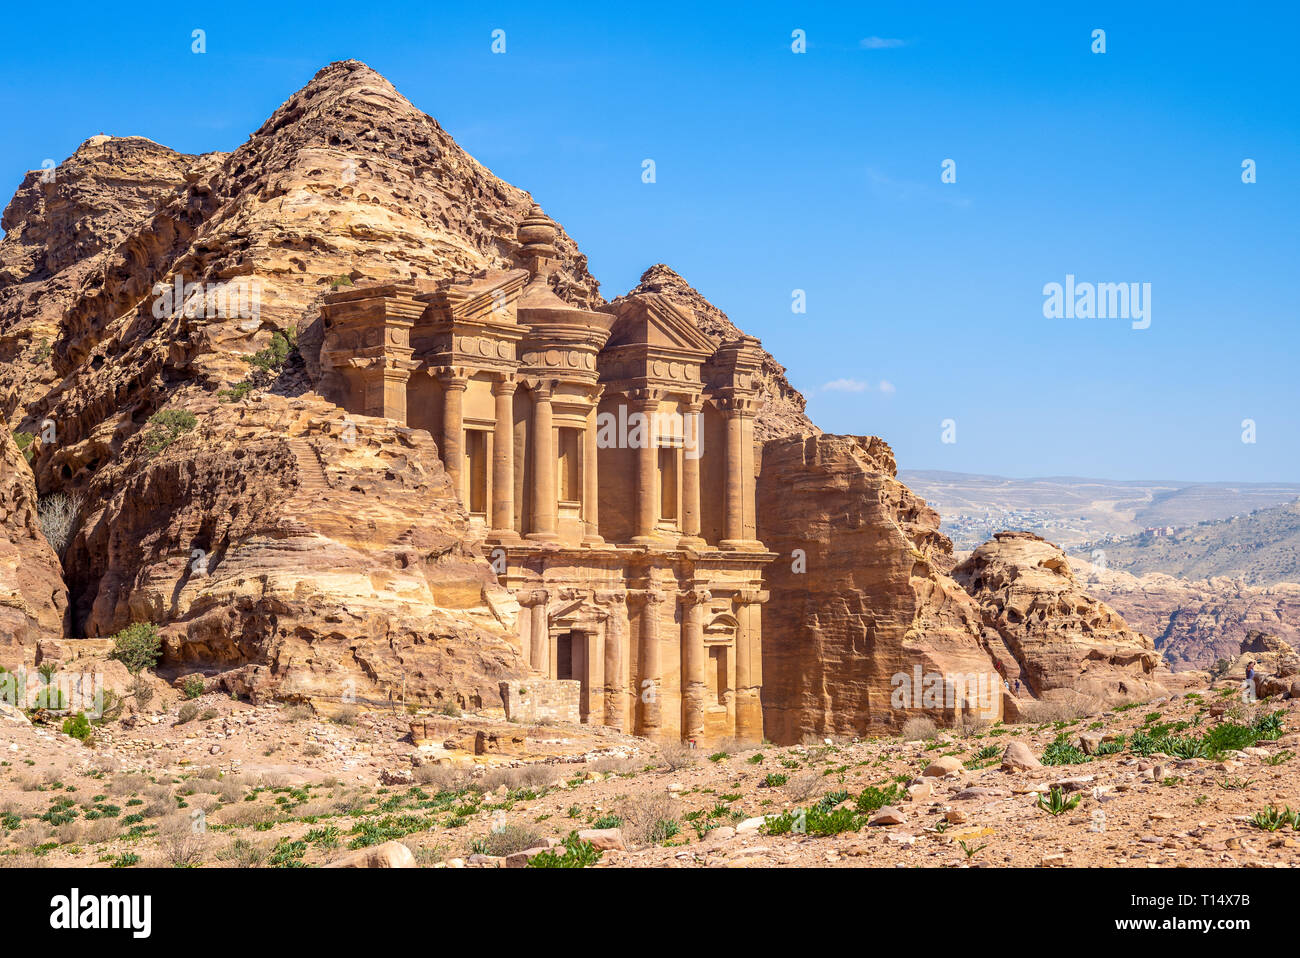 Ad Deir (The Monastery) at petra, jodan Stock Photo